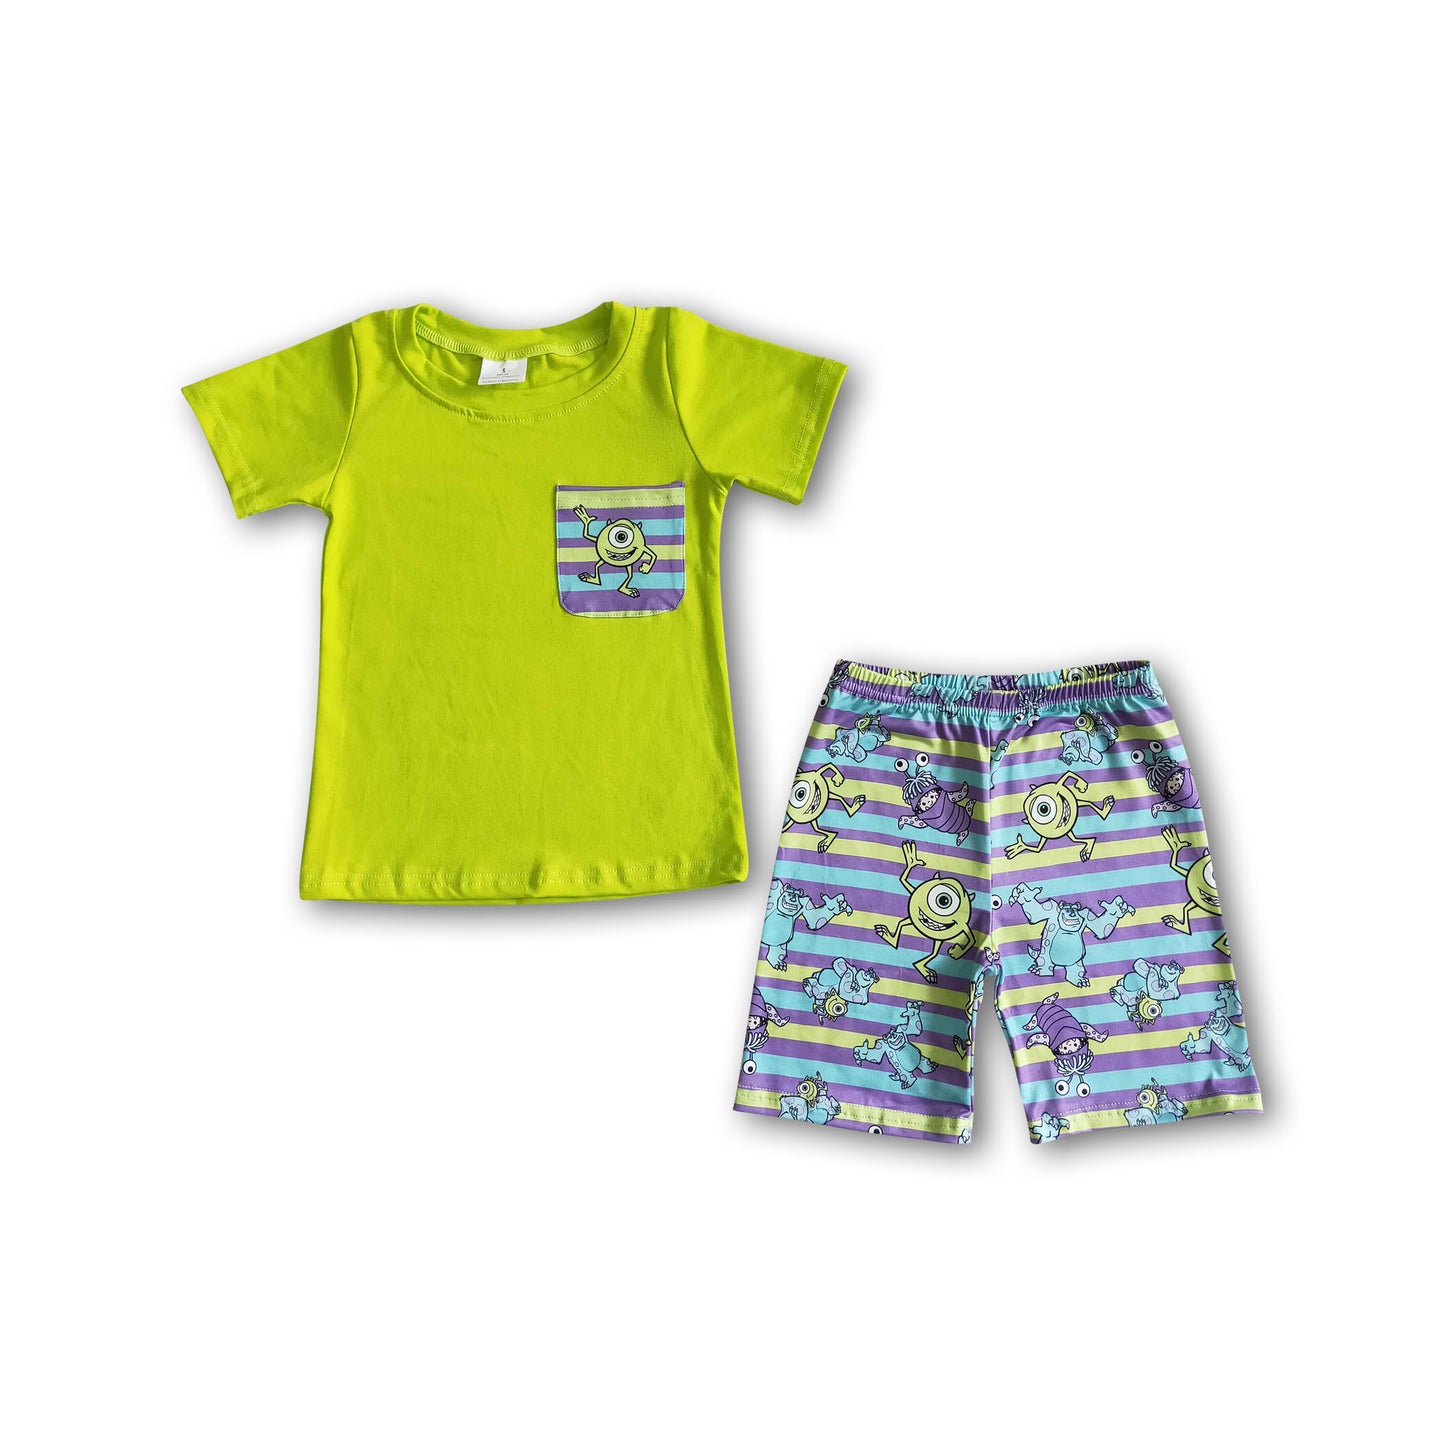 Pocket shirt shorts baby boy summer outfits